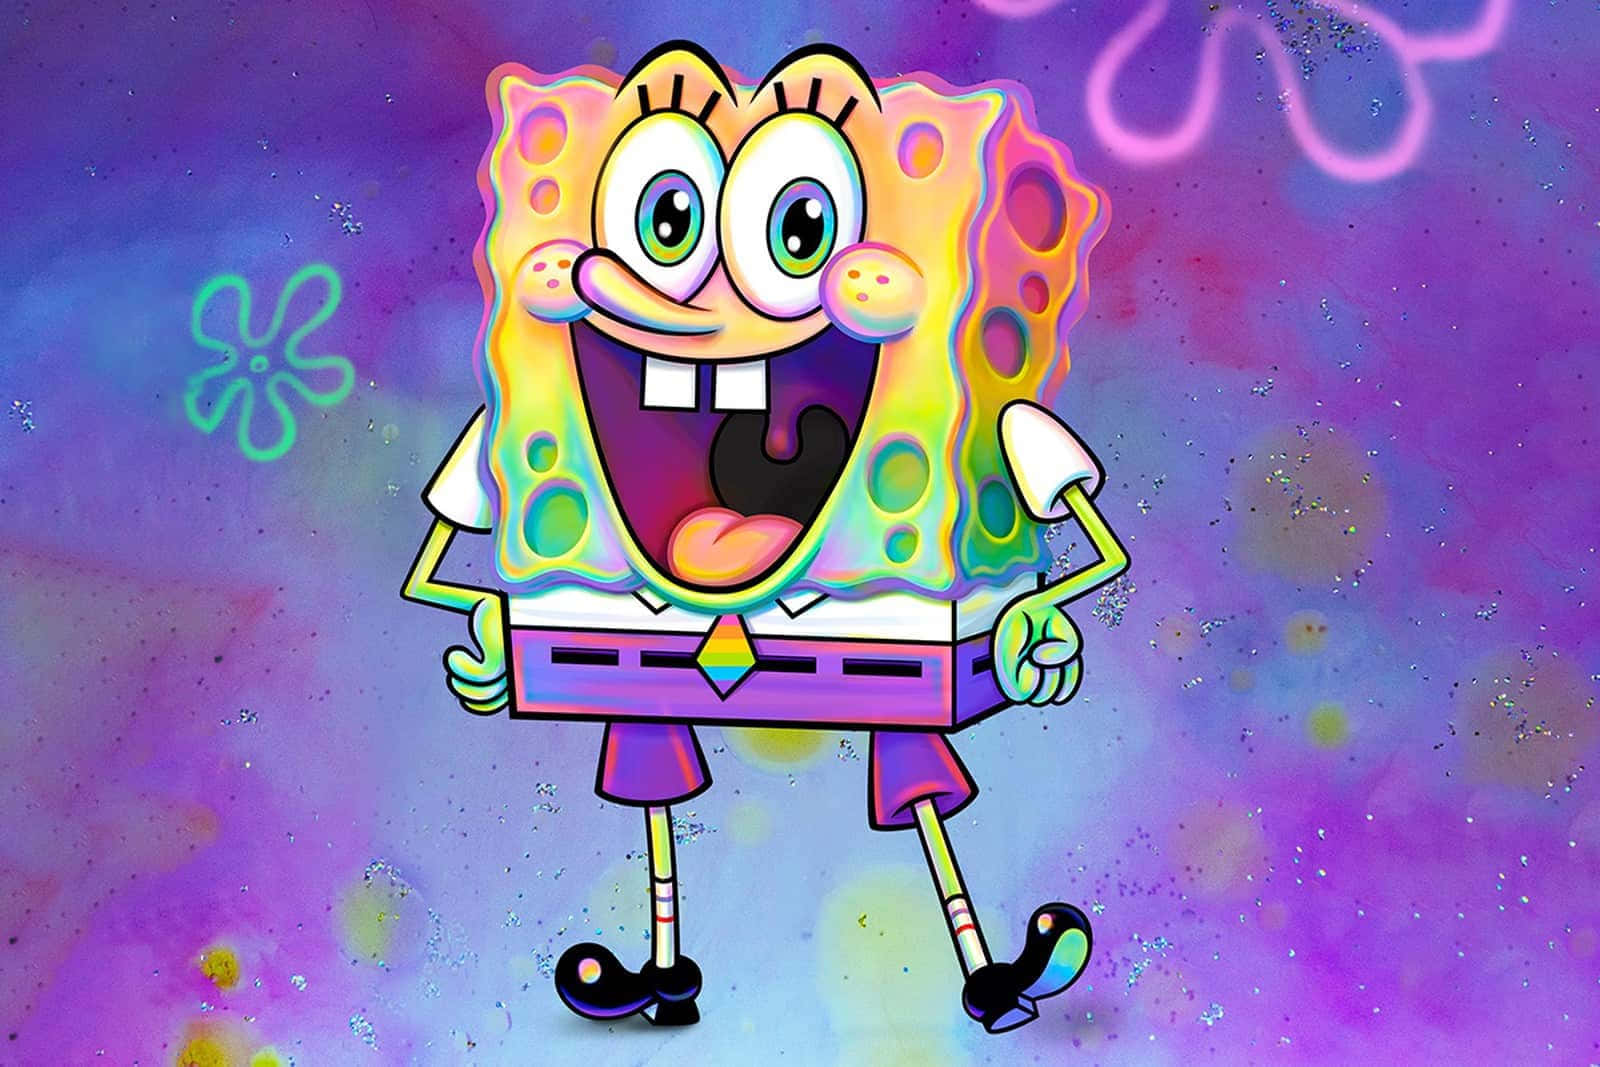 Sorridenteestetico Spongebob Squarepants Sfondo